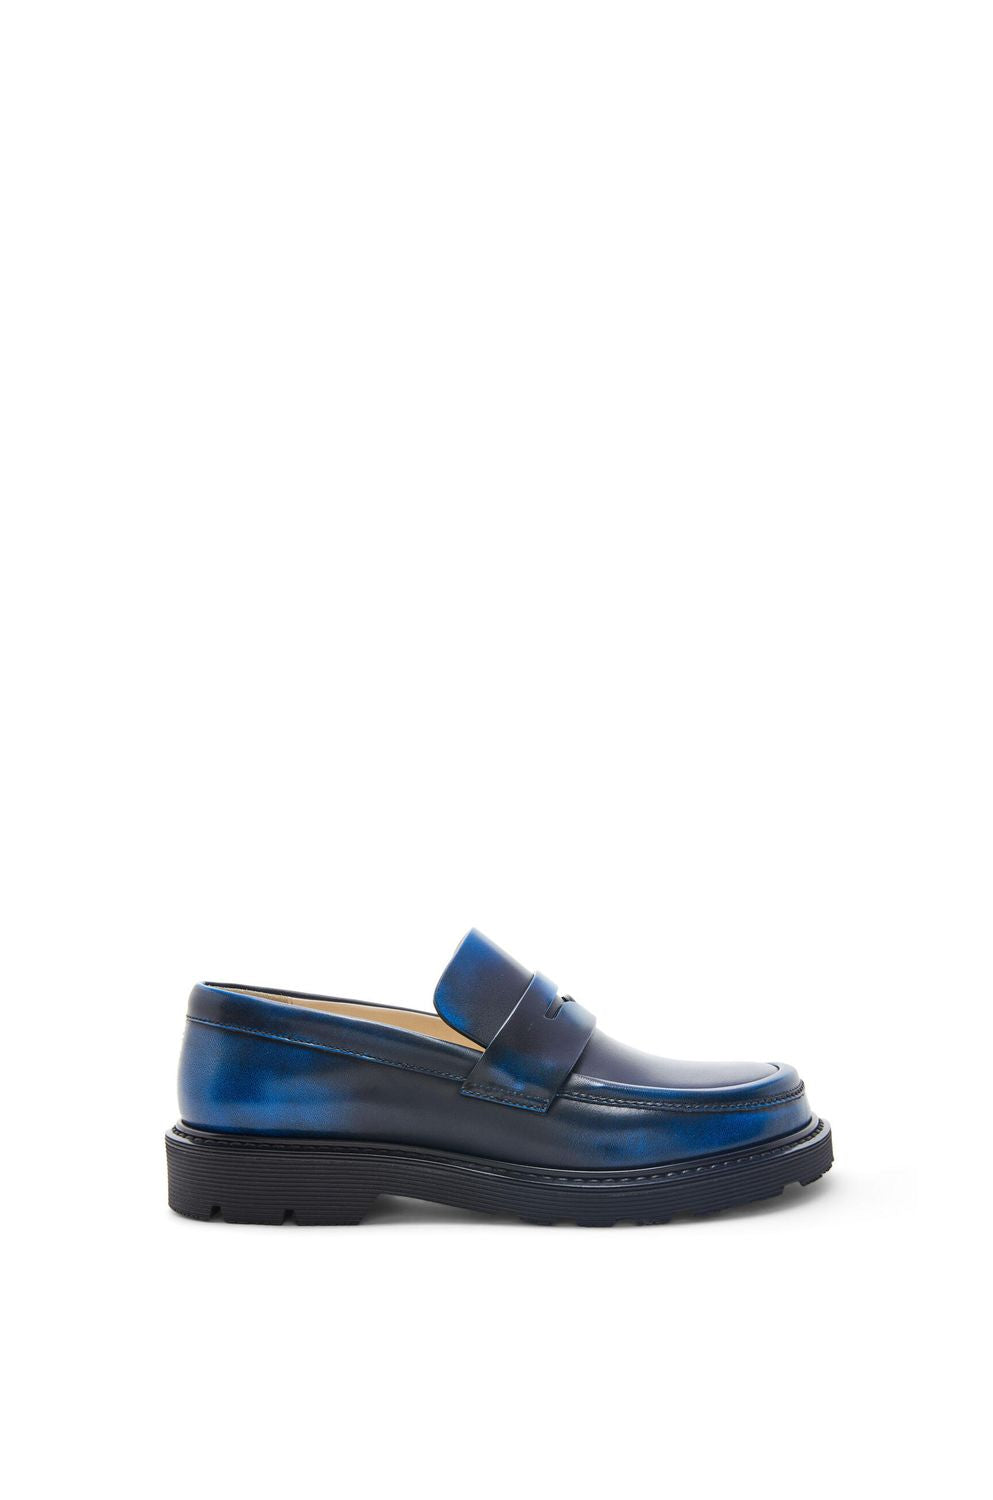 LOEWE Blue-Black Blaze Loafers for Women